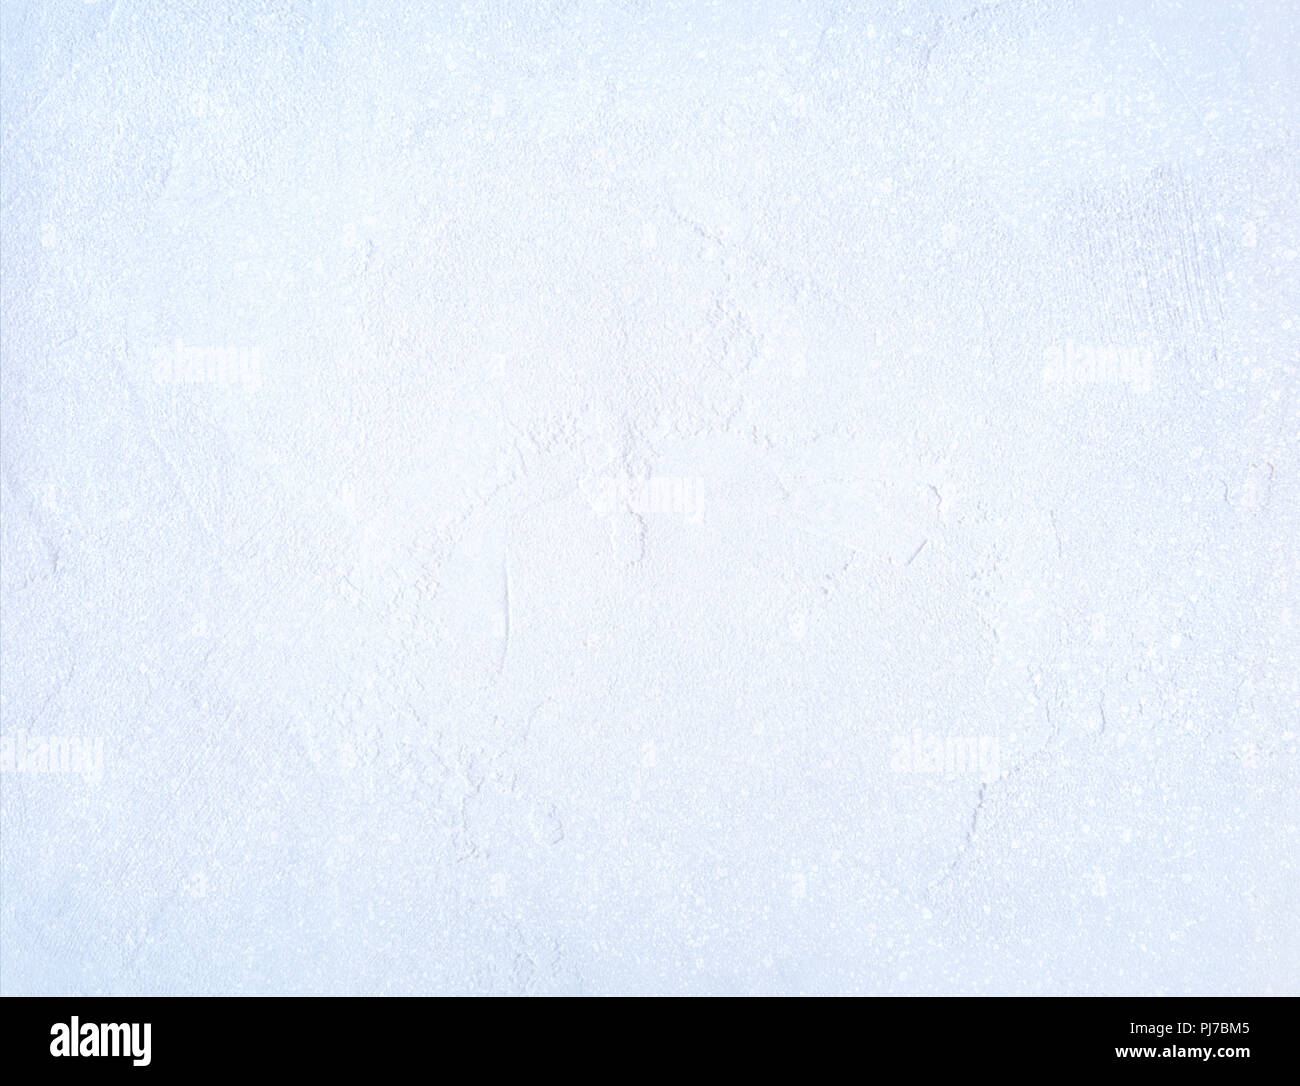 Gefrorenen Oberfläche durch eine dünne Schicht Schnee bedeckt - Iced Textur Hintergrund, Winter Material Stockfoto